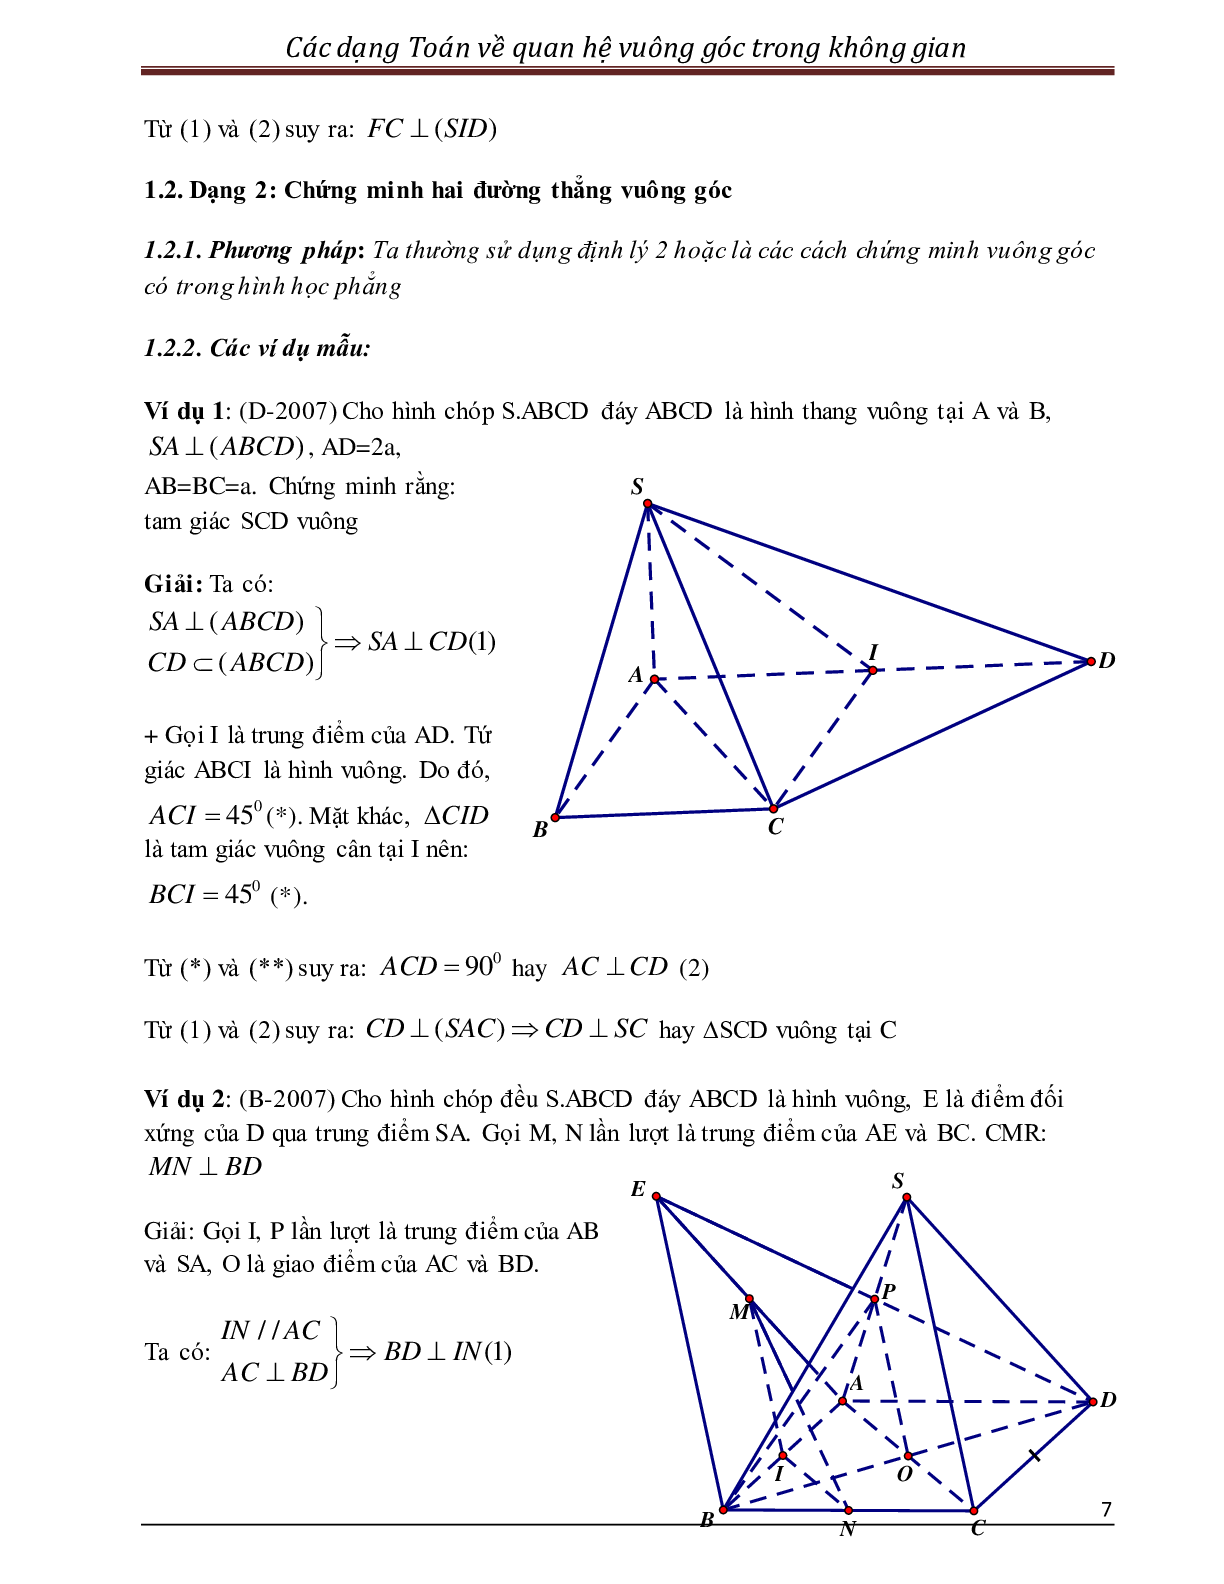 Các dạng toán quan hệ vuông góc trong không gian (trang 7)